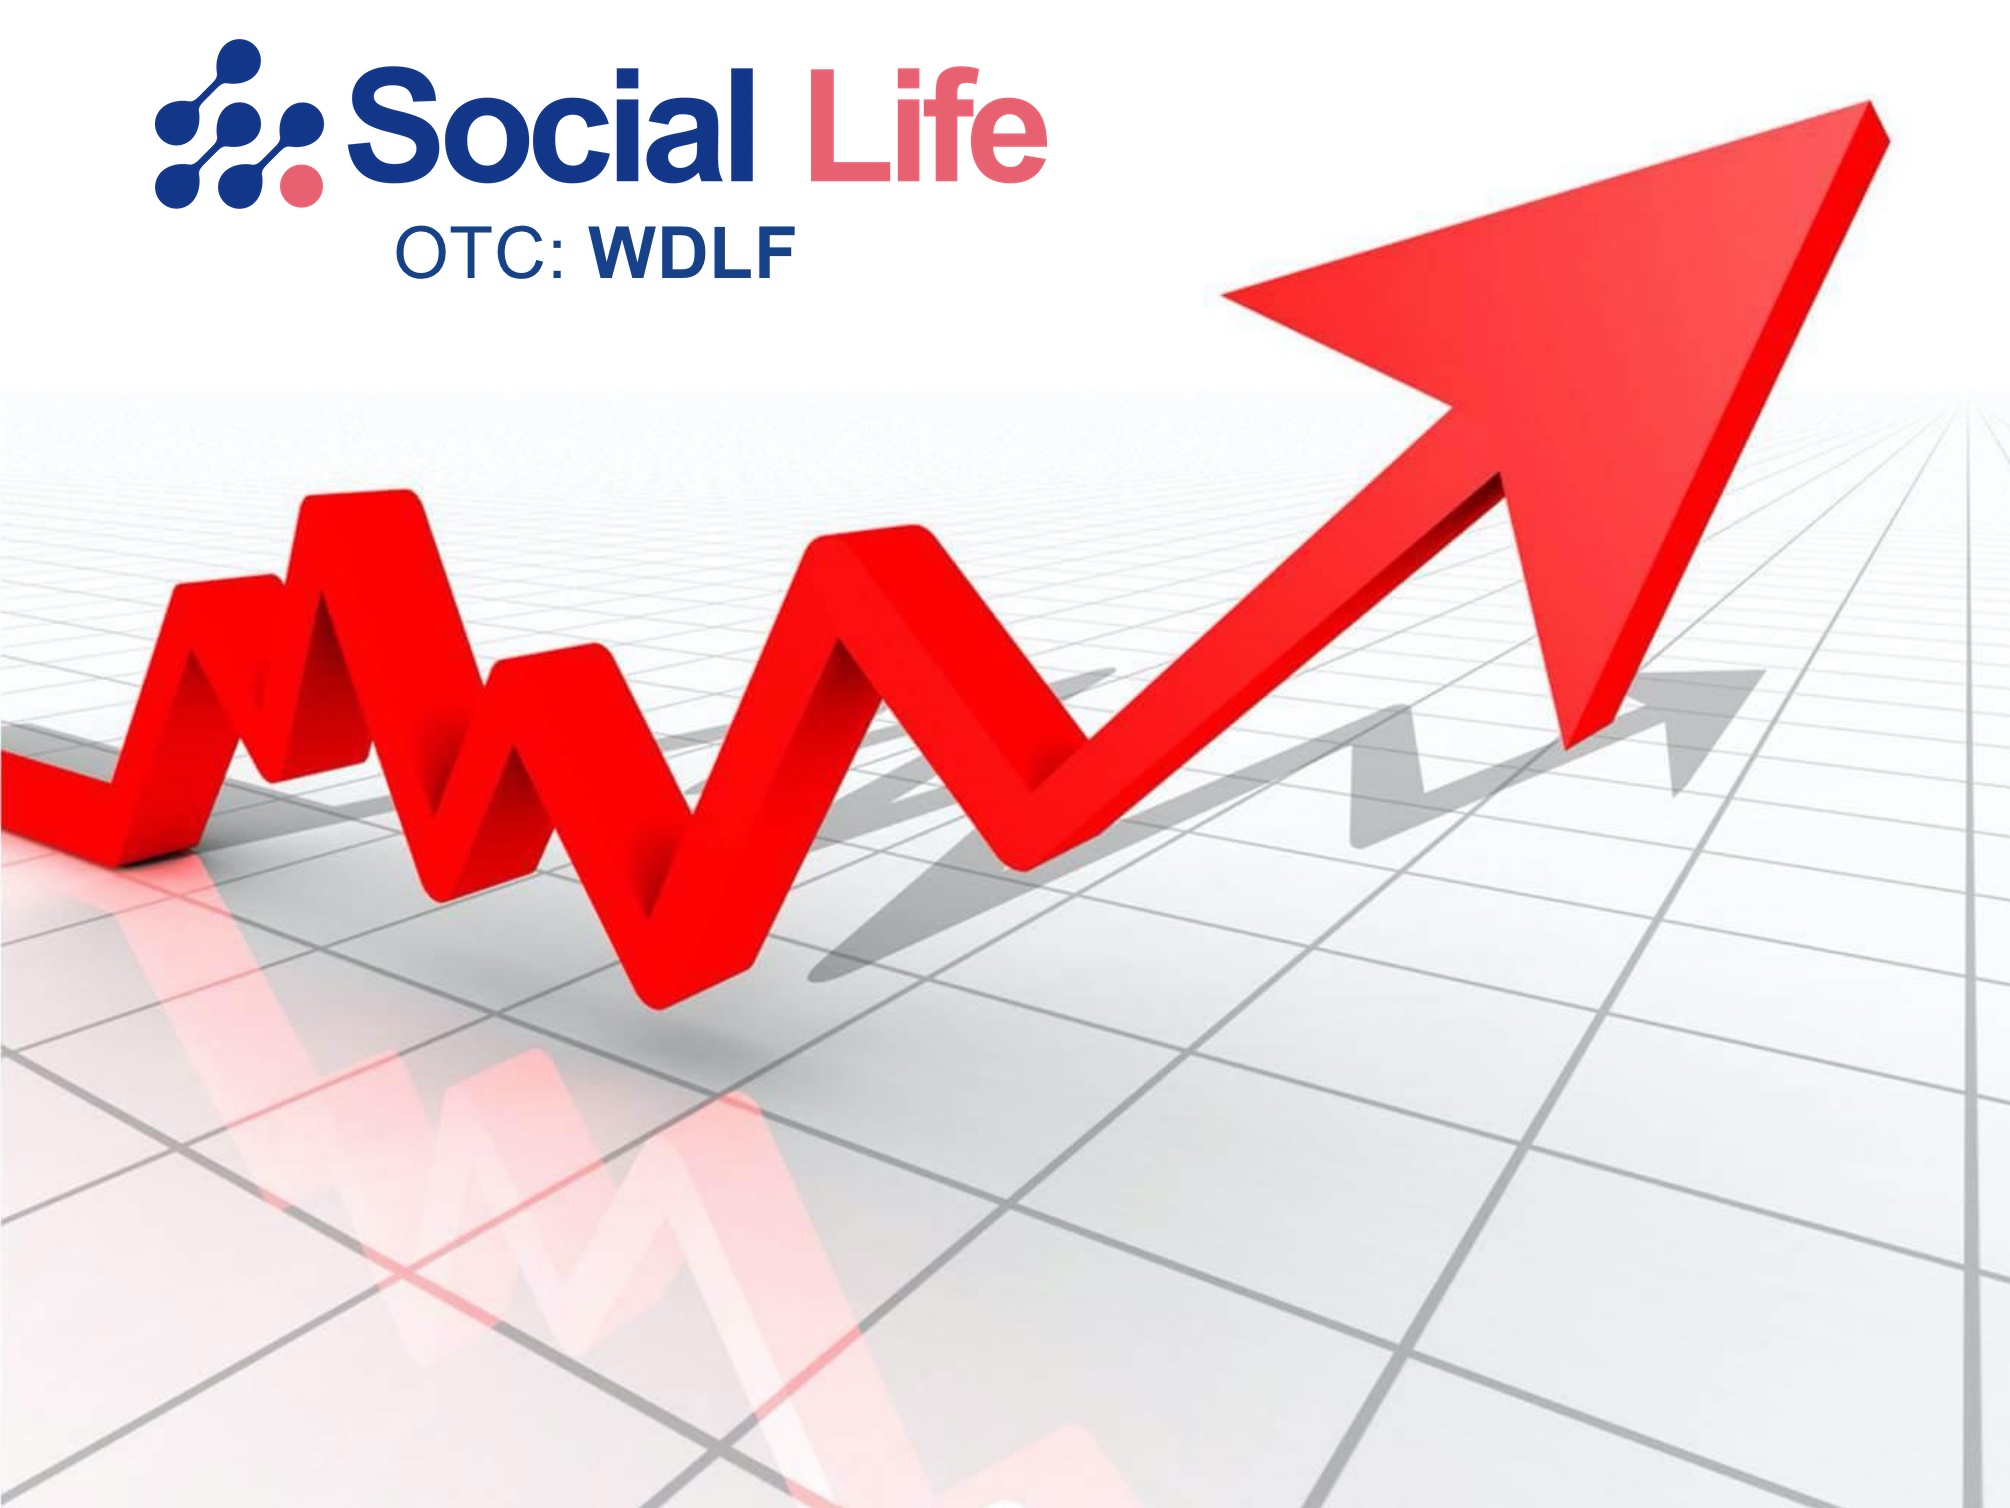 Social Life Network - OTC: WDLF - Shareholder Update Press Release